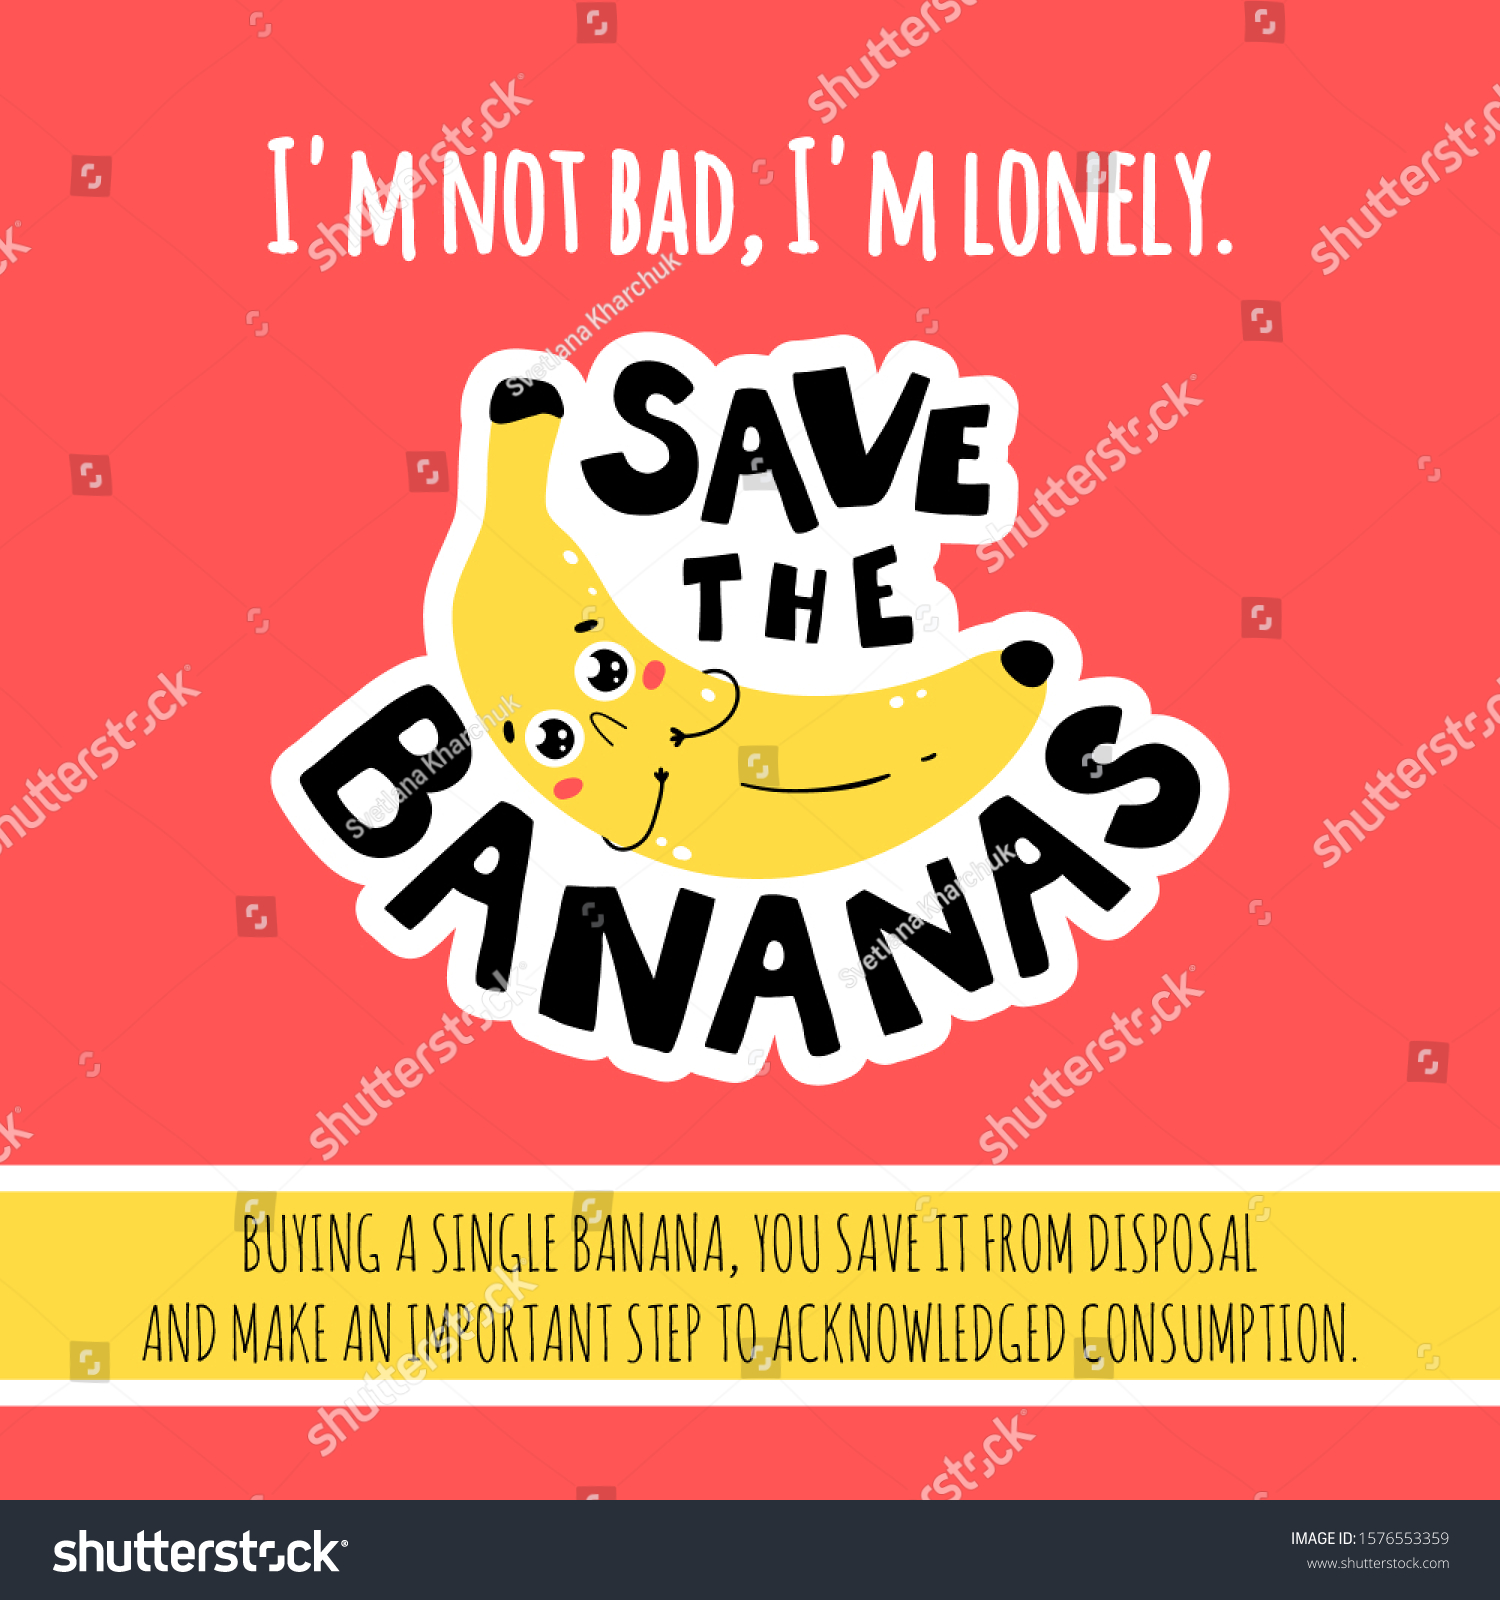 Save Bananas Conscious Consumption Poster Shops Stock Vector